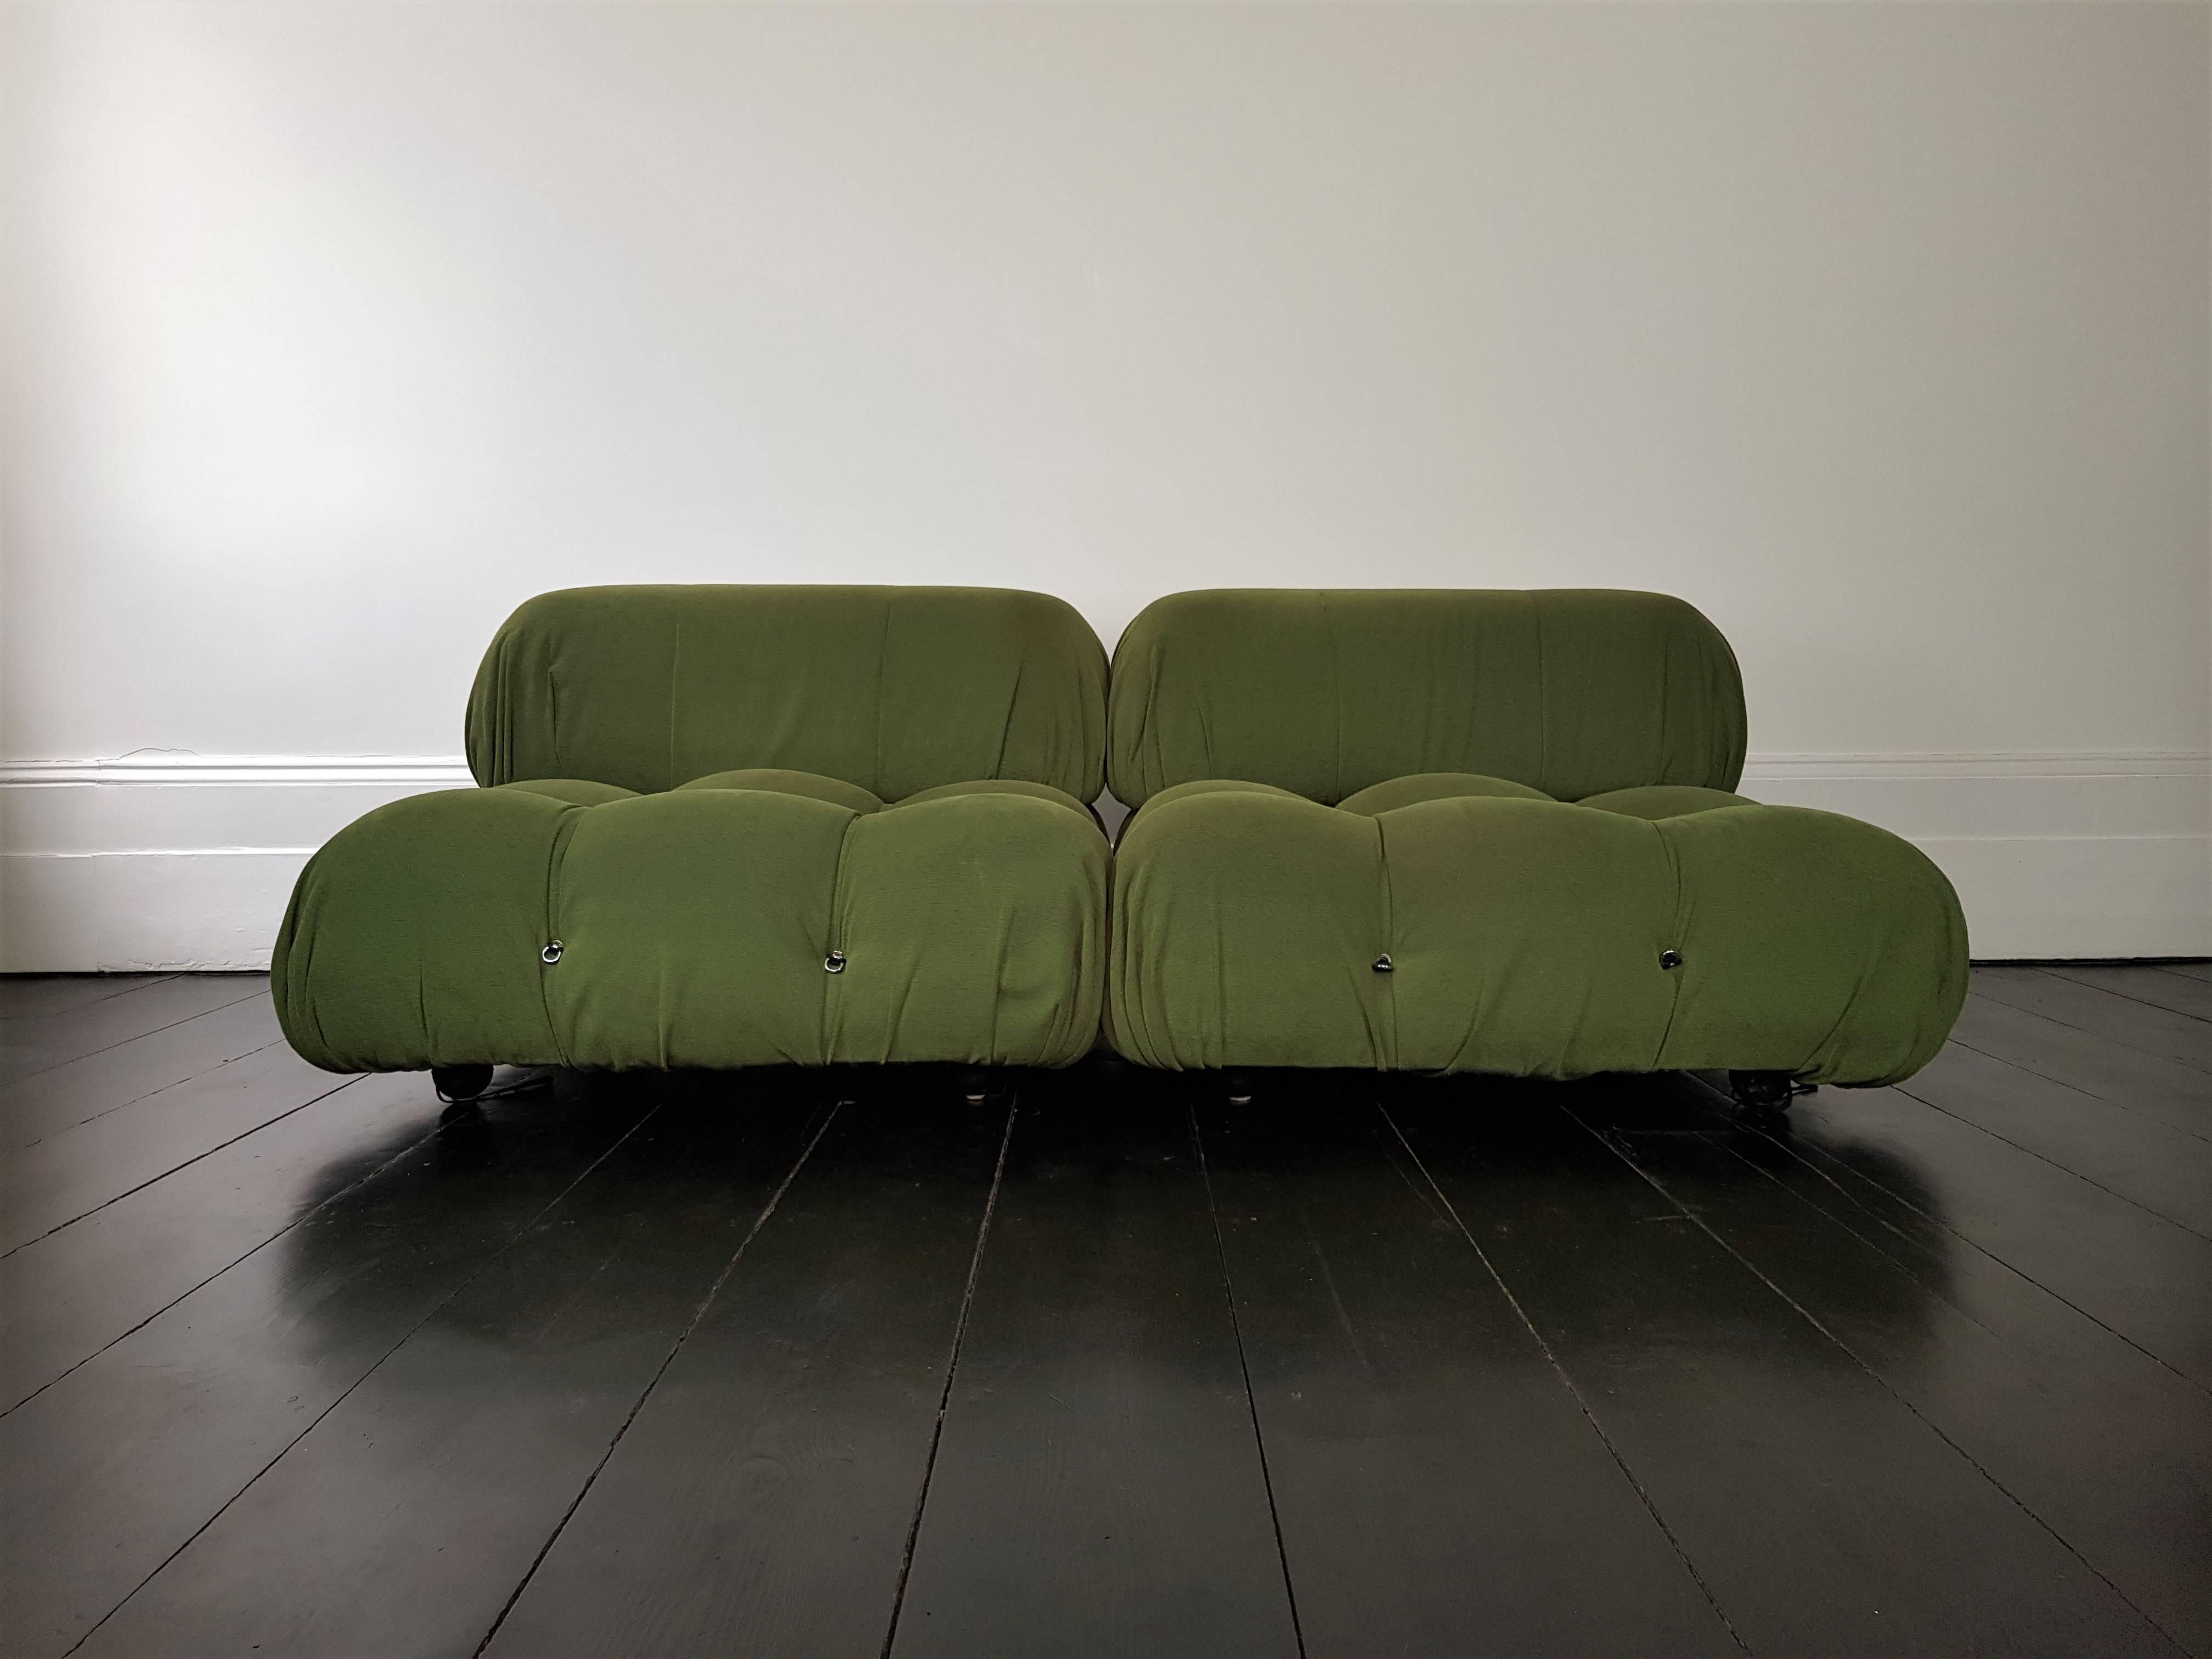 20th Century Mario Bellini 'Camaleonda' Modular Sofa with Original Fabric, Designed 1971